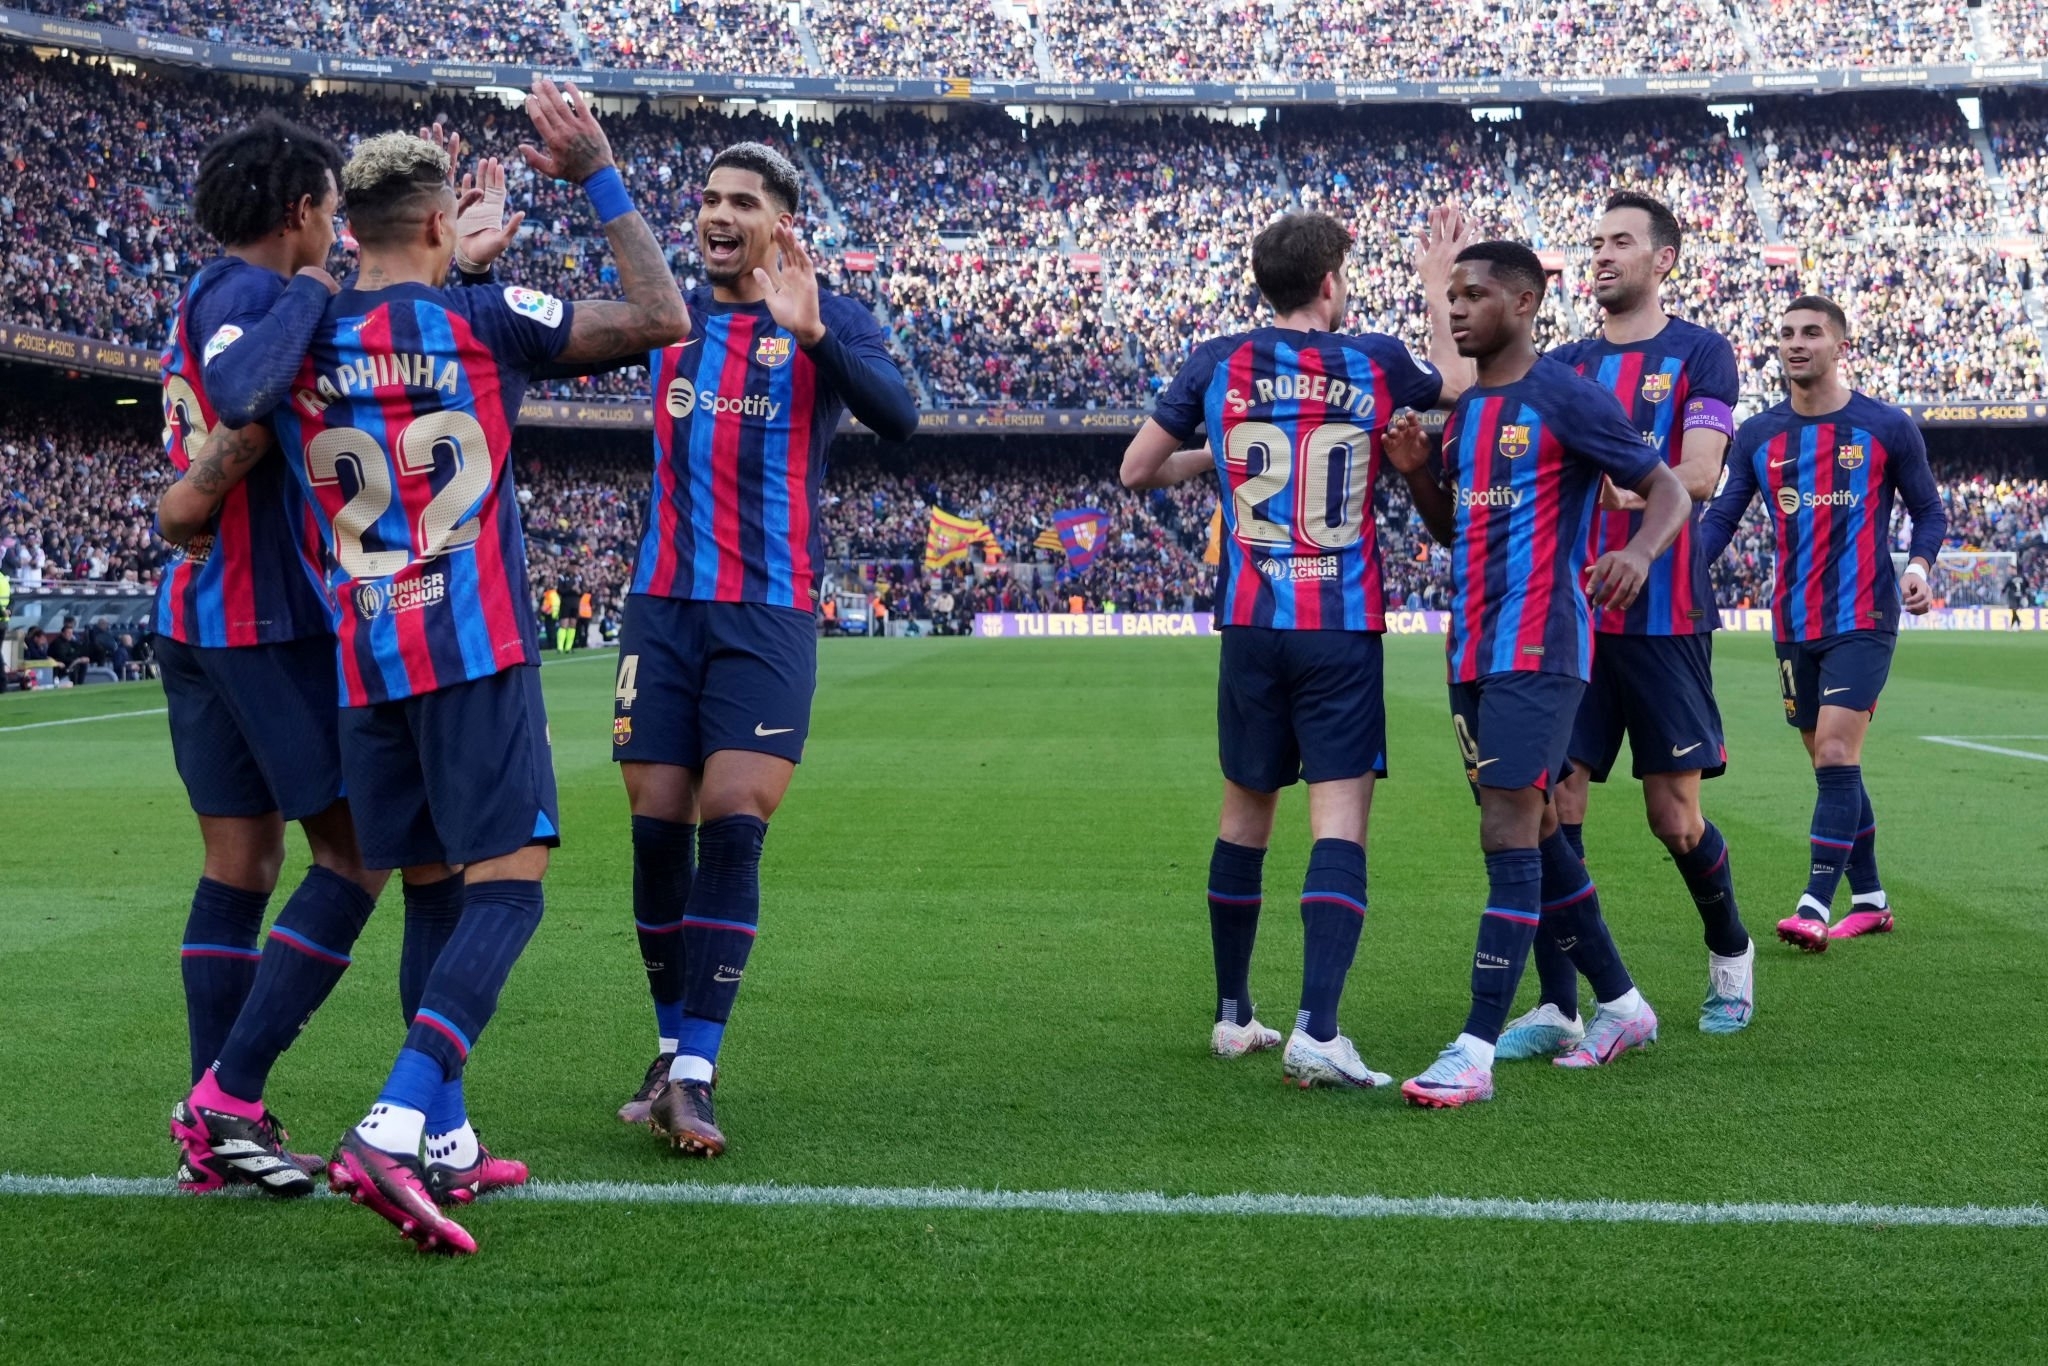 El Clasico LIVE Streaming: Barcelona BERTUJUAN untuk meraih GANDA atas Real Madrid, Cek Preview, Berita Tim, Prediksi XI